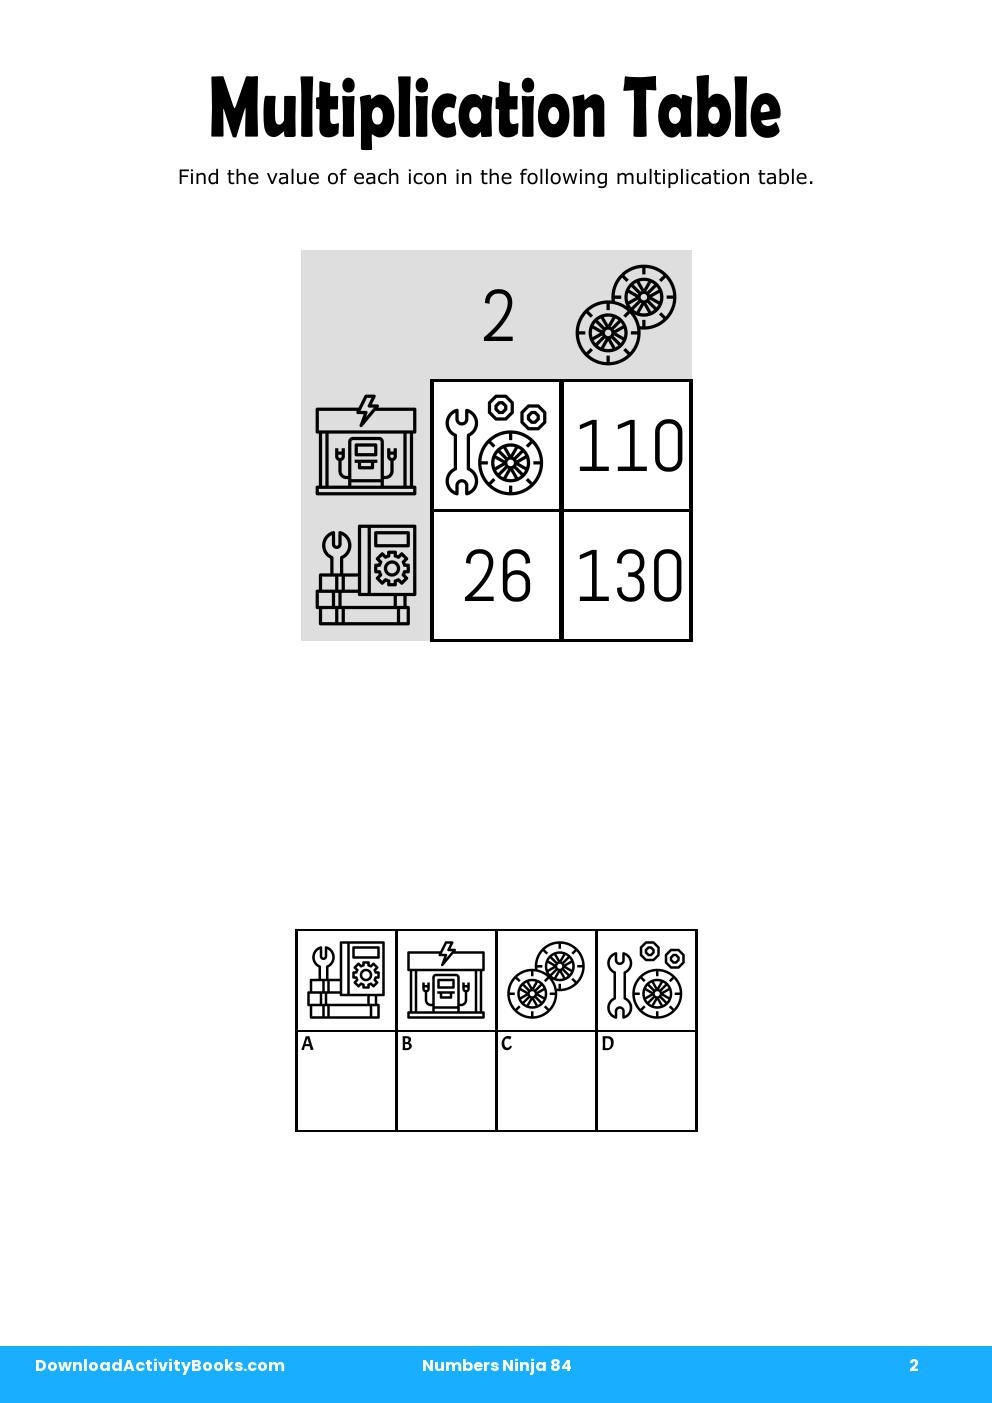 Multiplication Table in Numbers Ninja 84